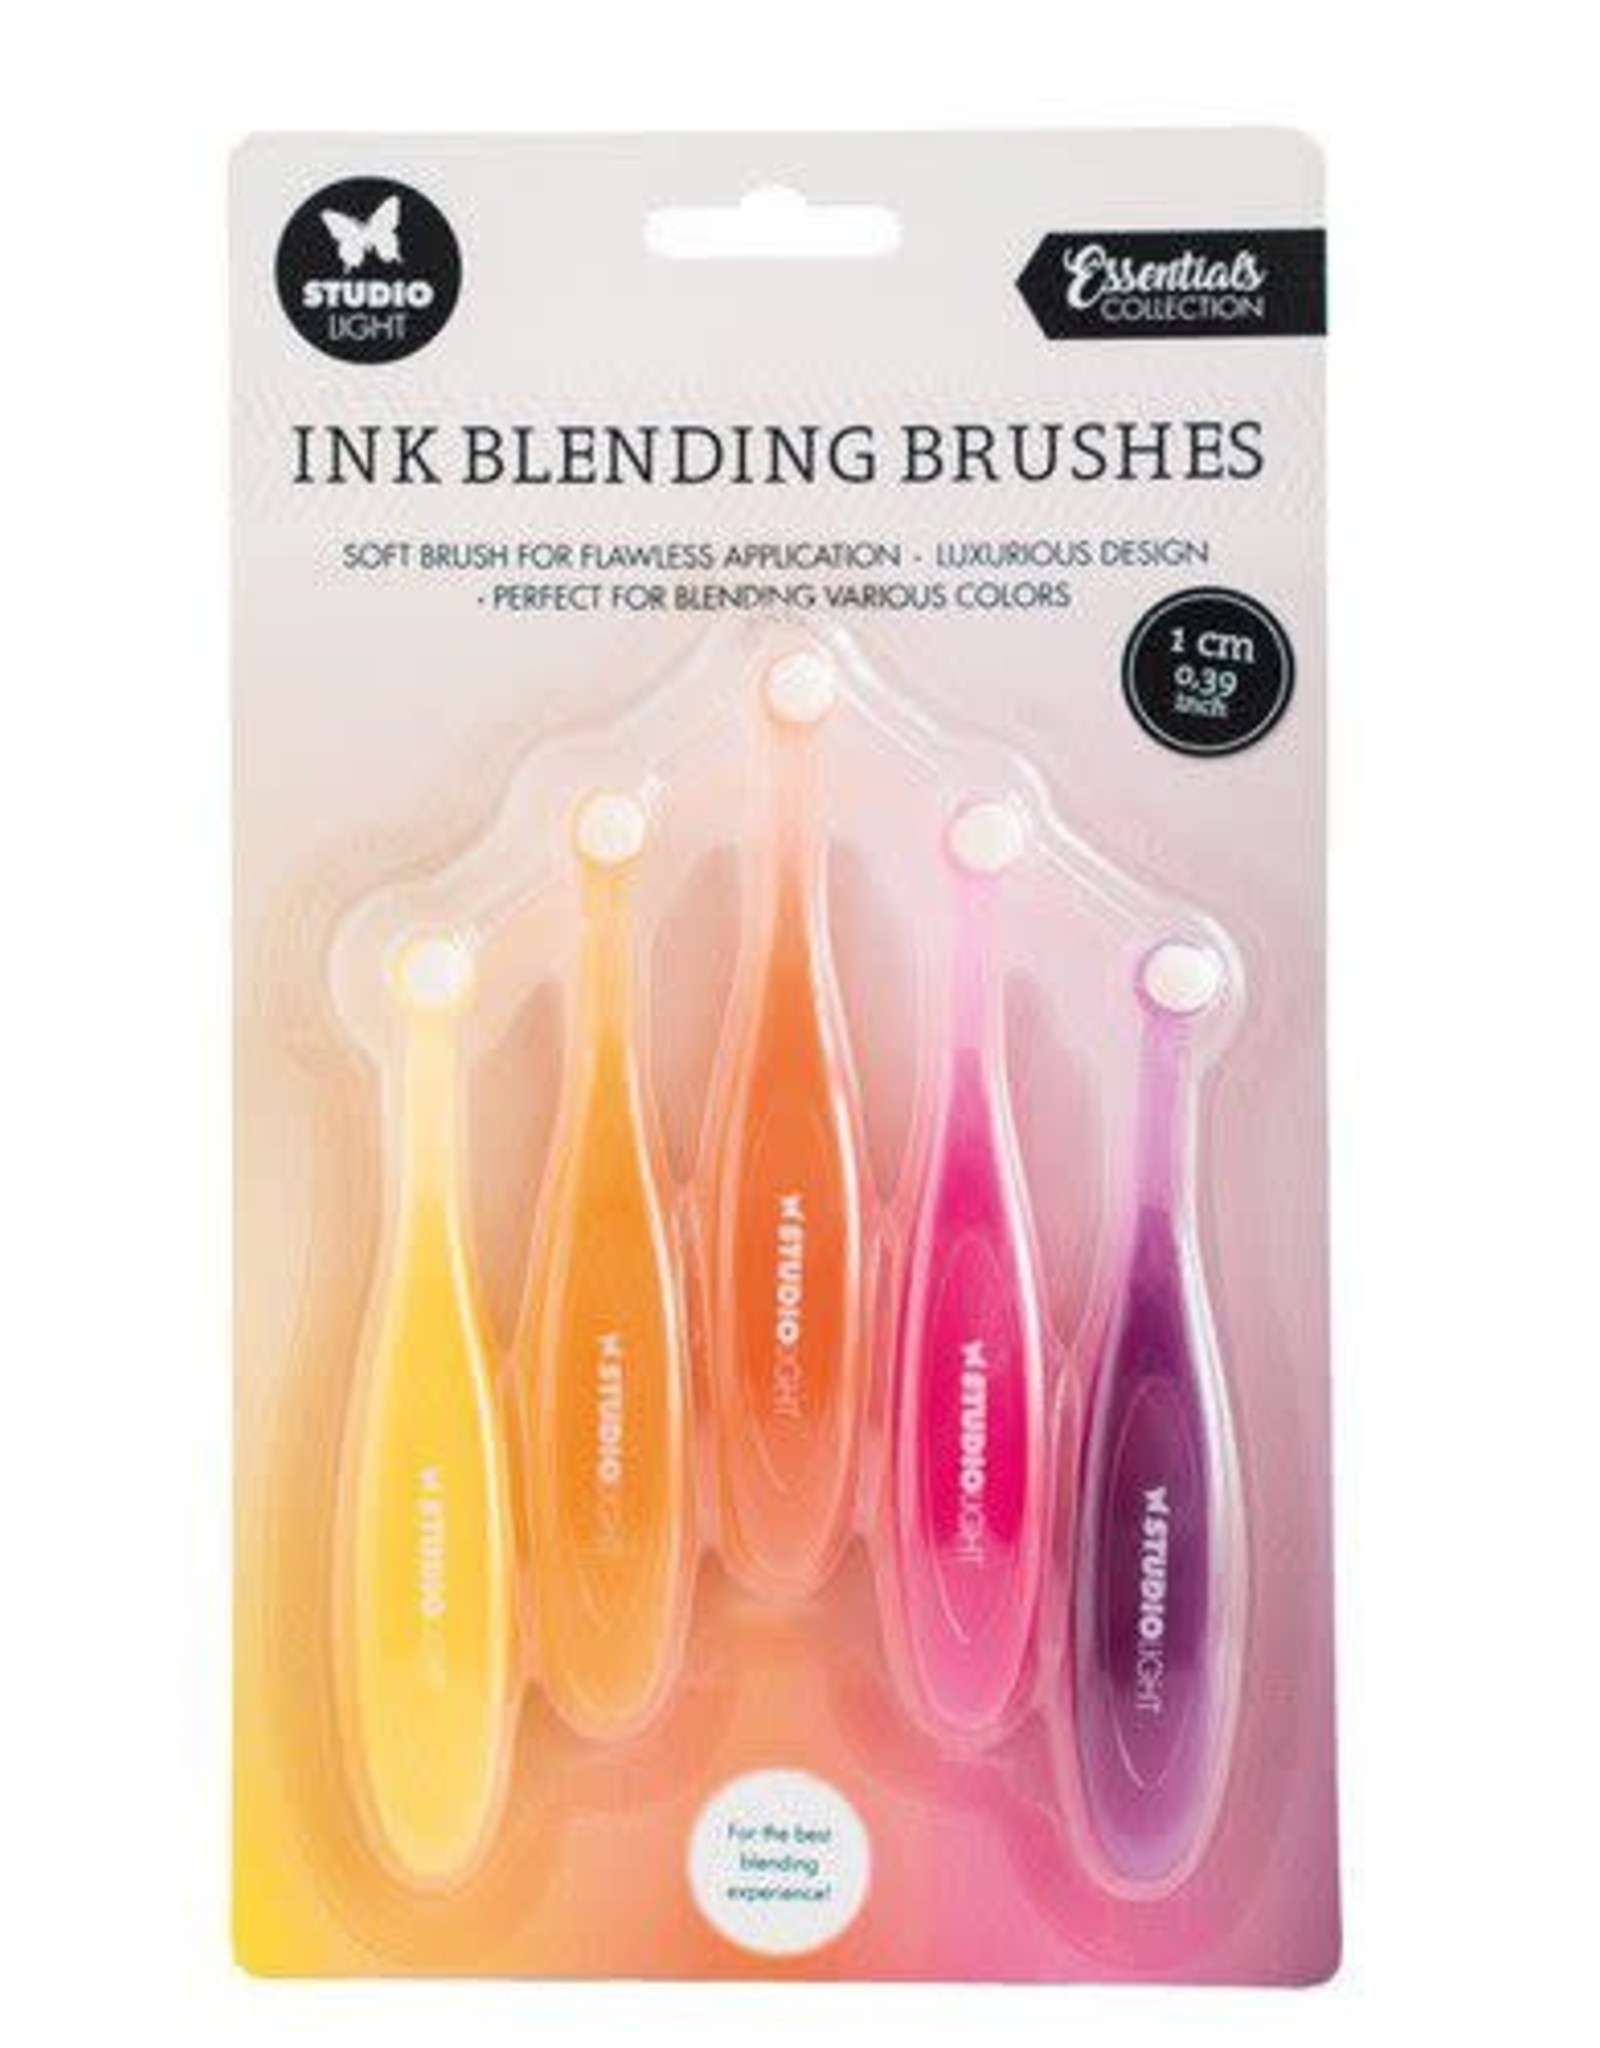 SL Ink Blending Brushes 1 cm